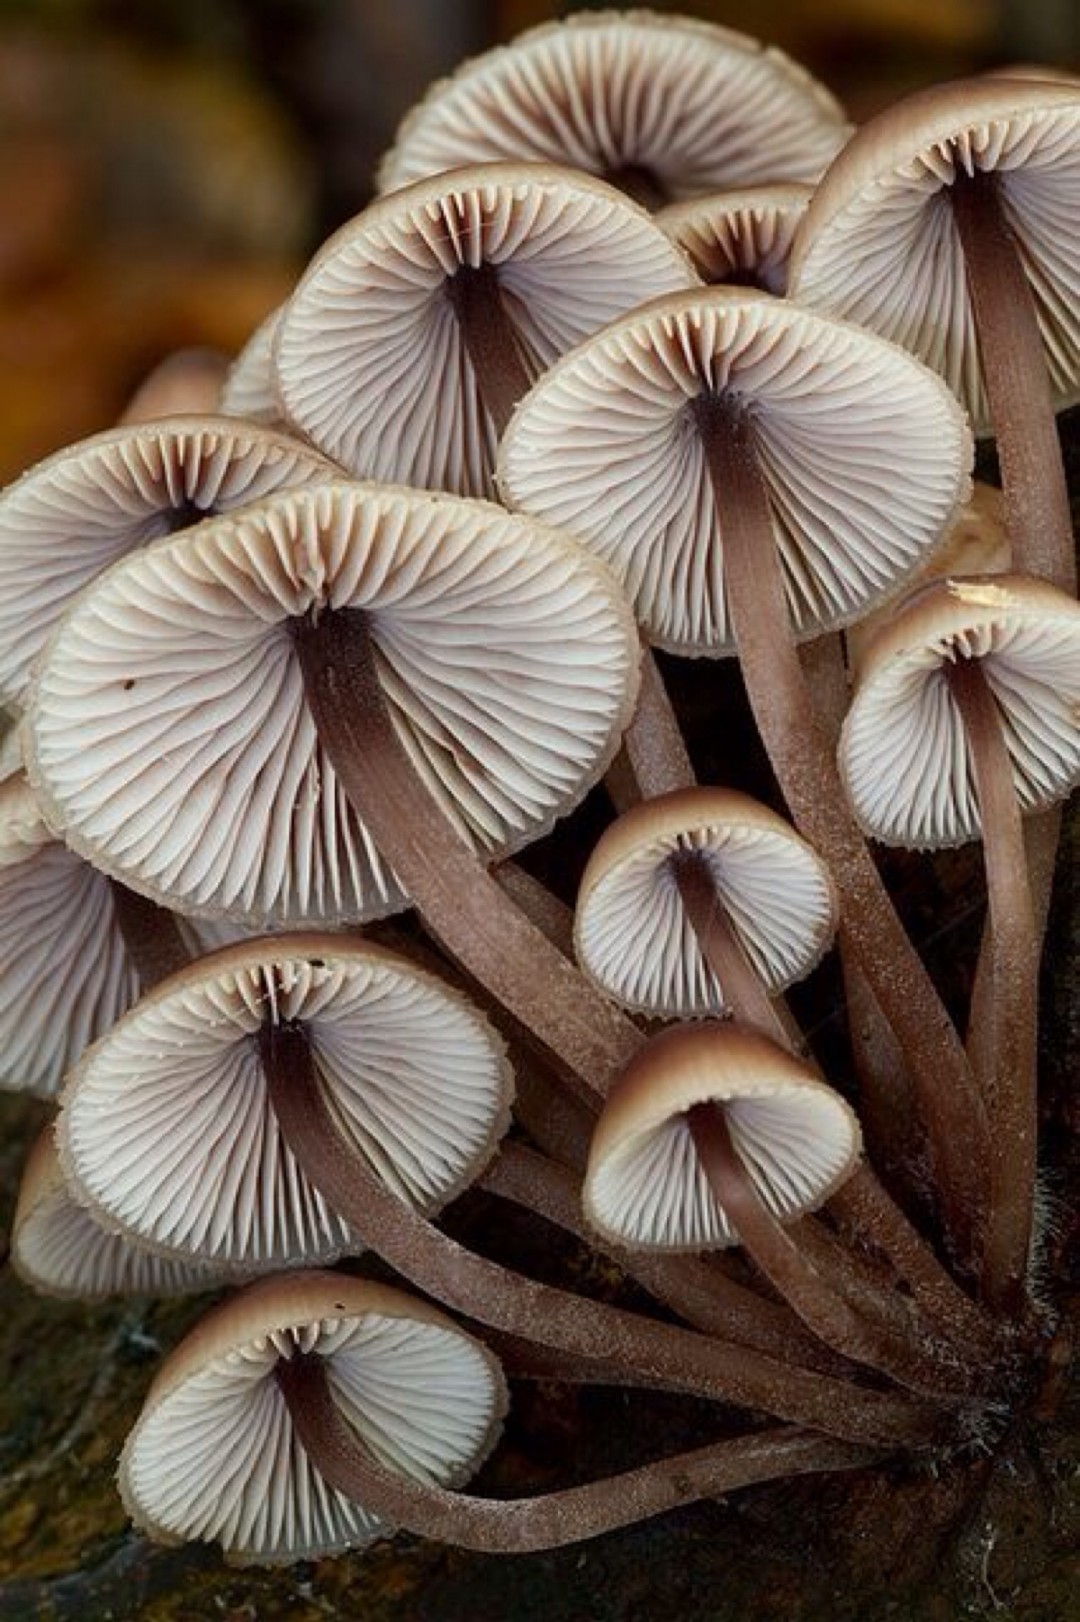 蘑菇的形状多种多样,一般常见的有钟形,斗笠形,半球形,平展形,漏斗形